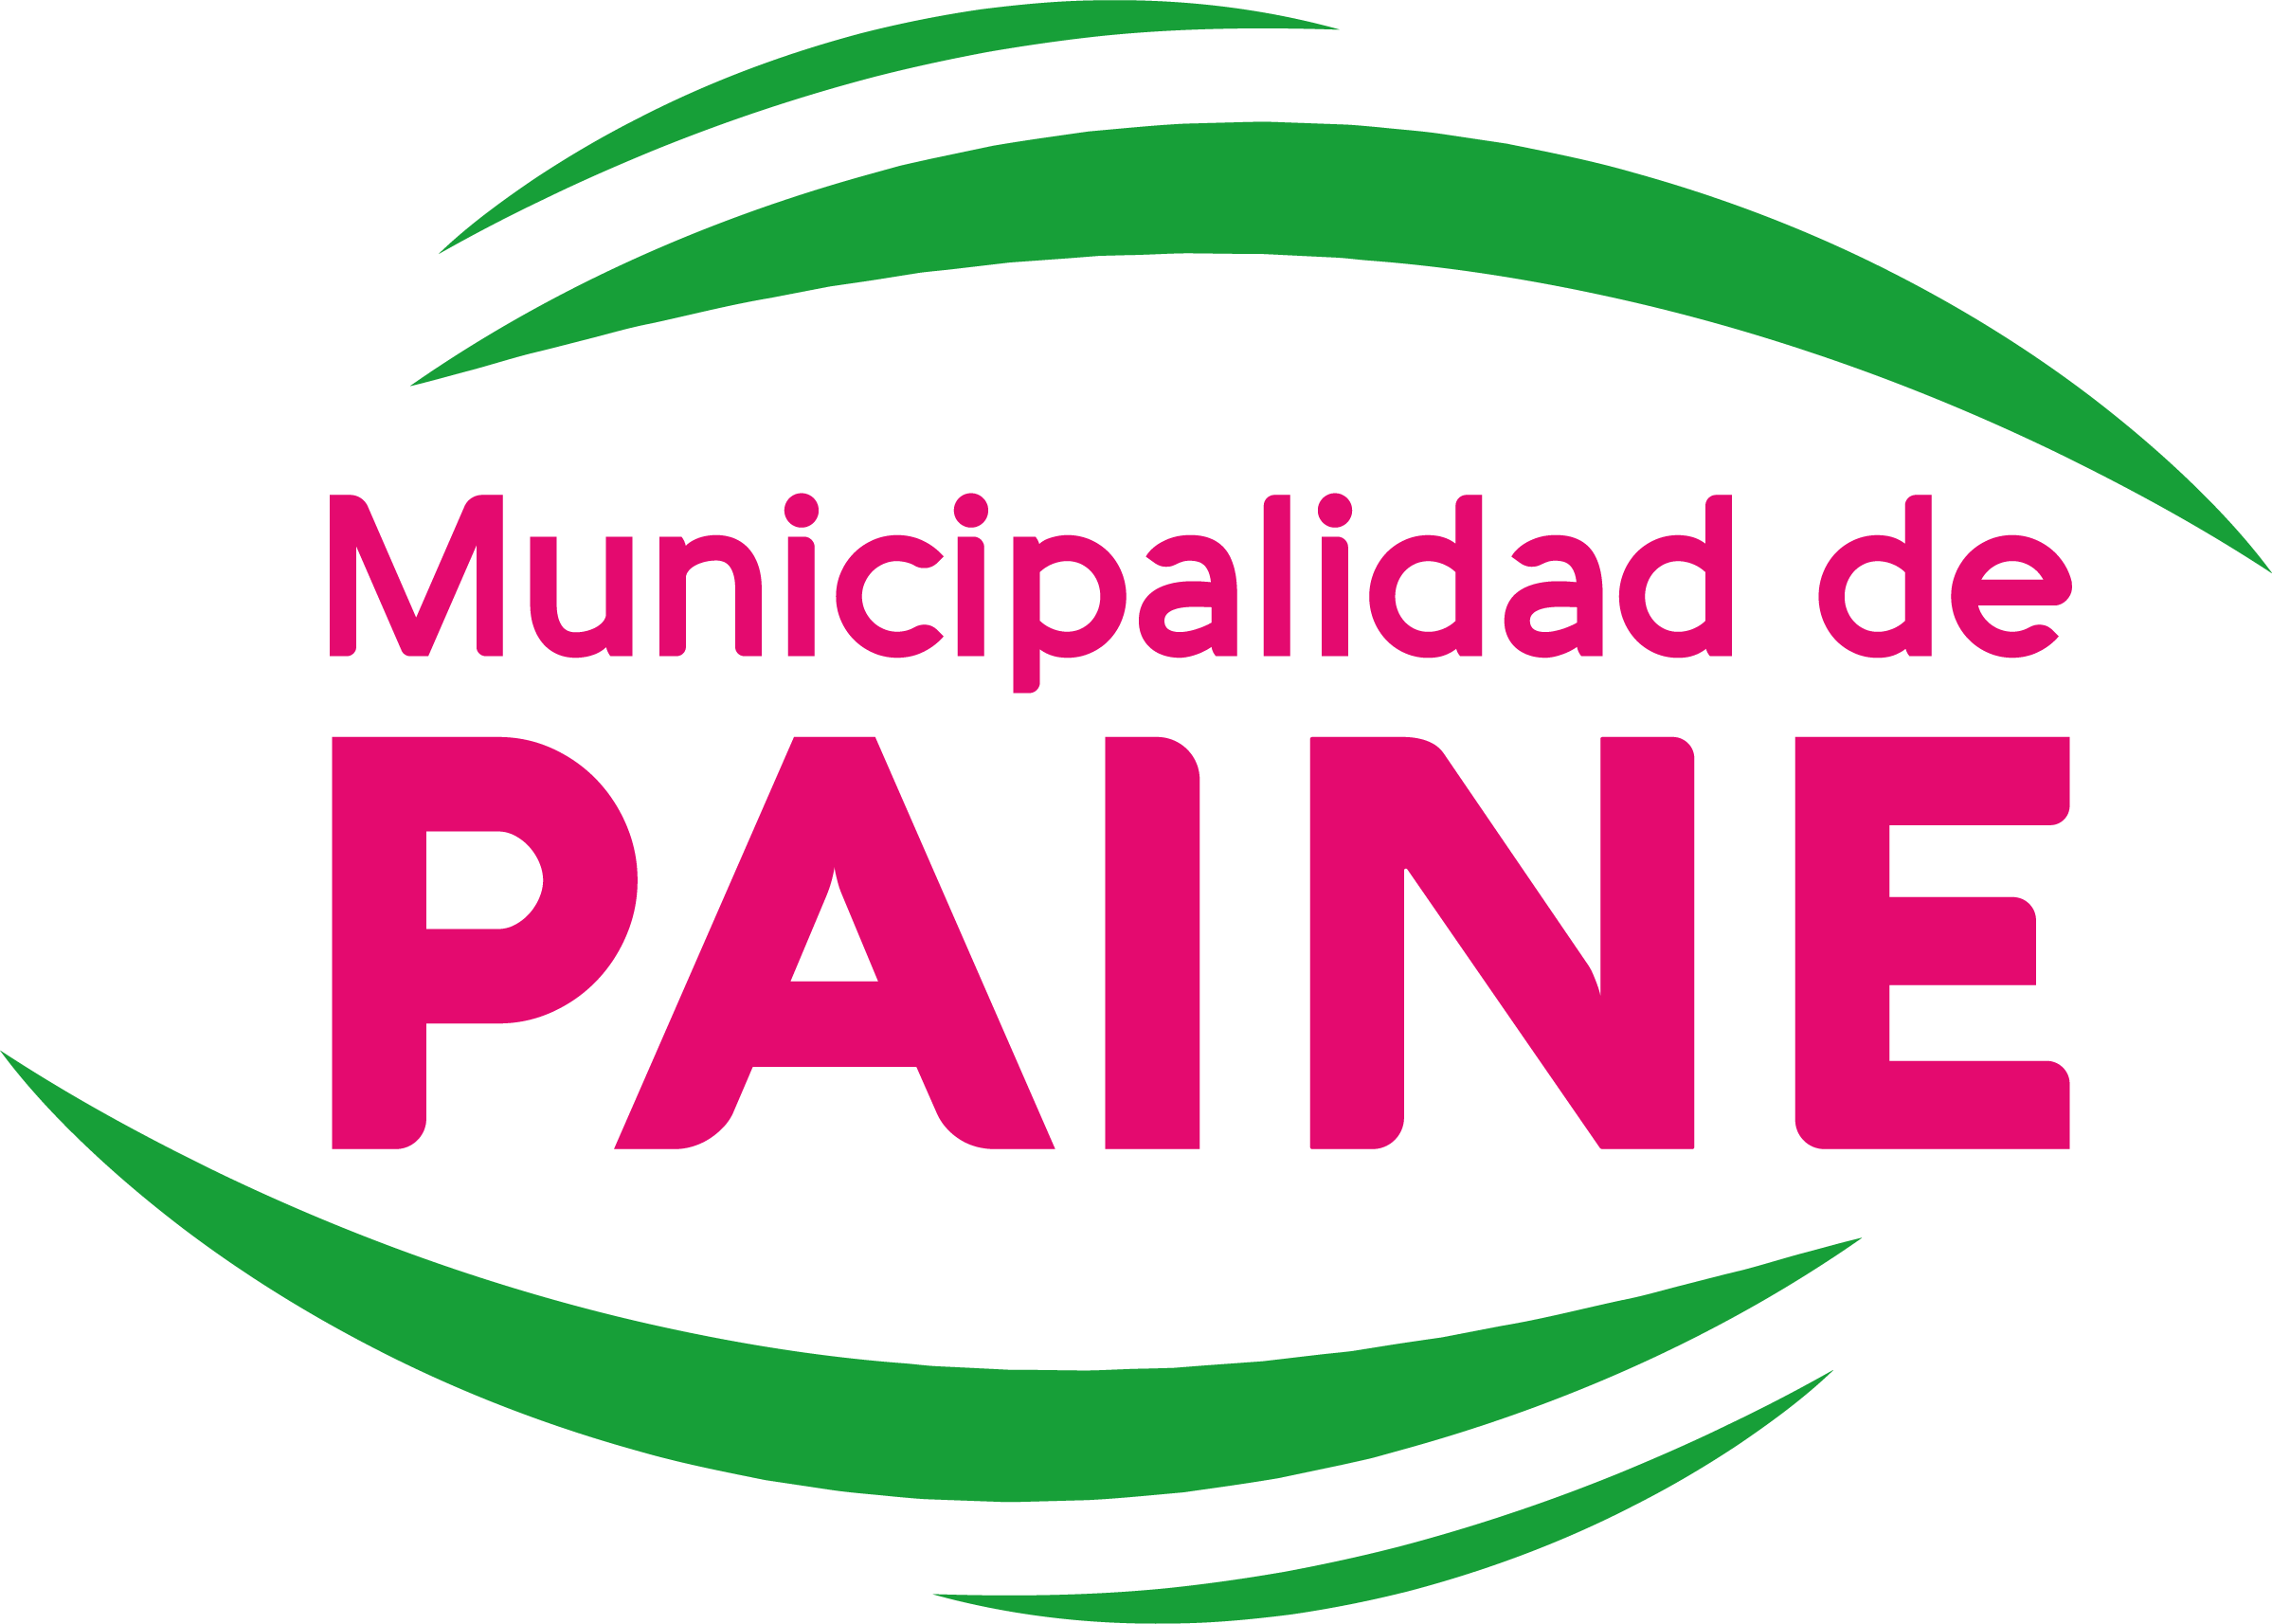 Paine